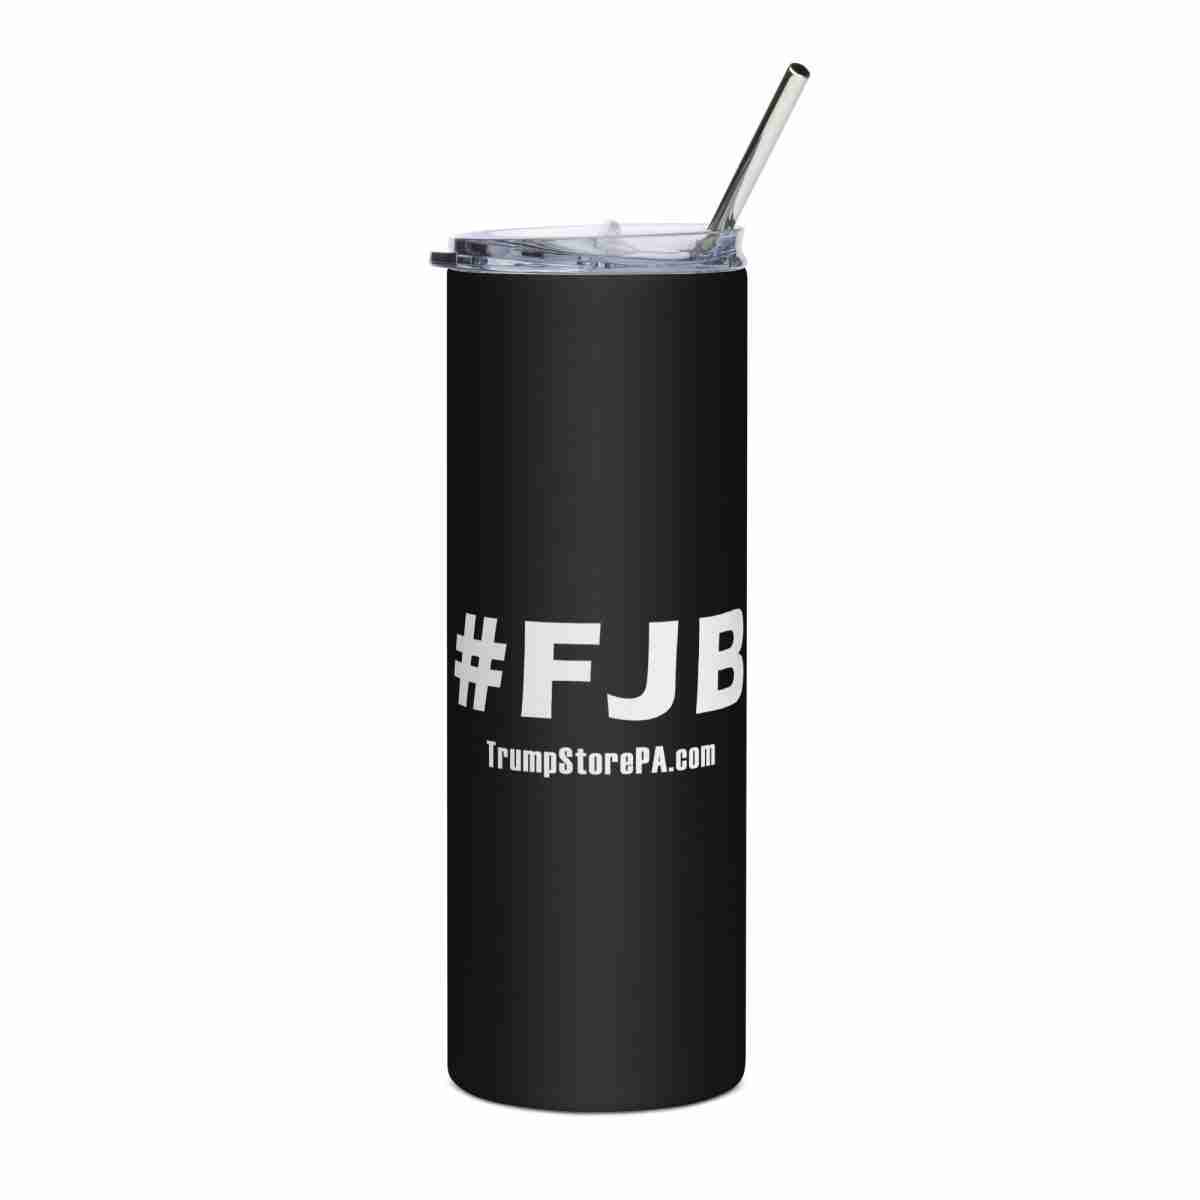 The FJB Tumbler